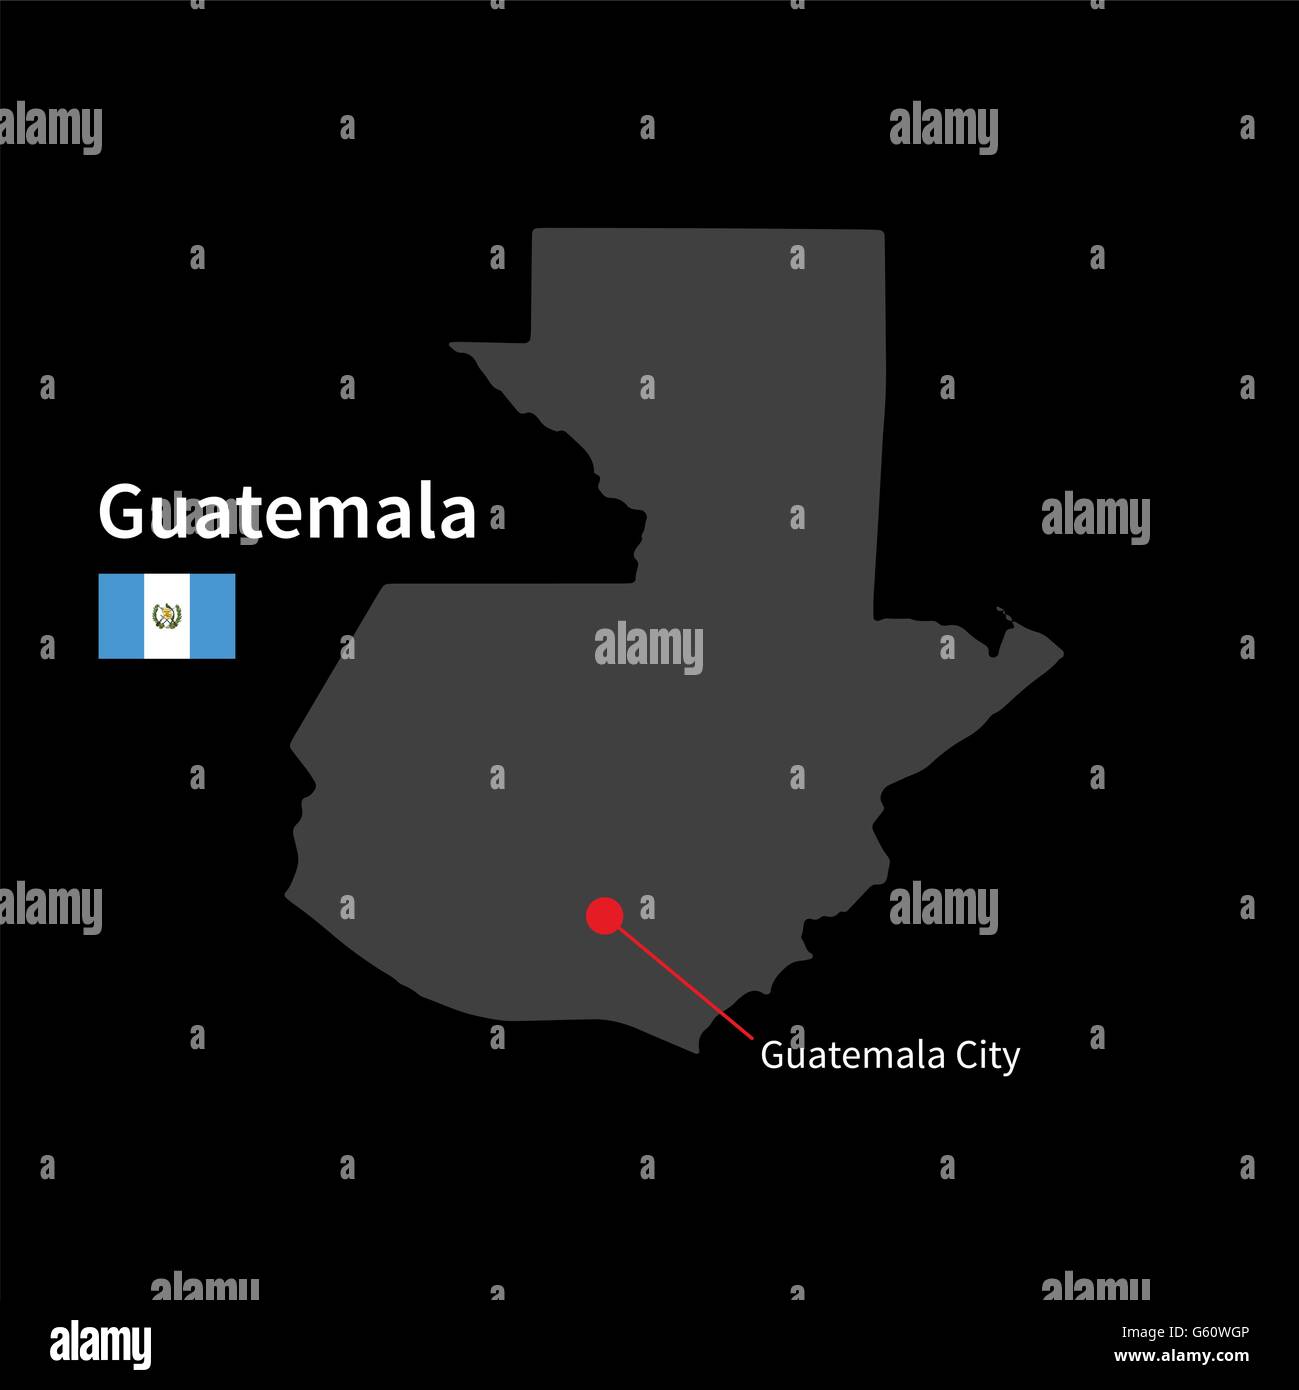 Detaillierte Karte Von Guatemala Und Hauptstadt Guatemala Stadt Mit Flagge Auf Schwarzem 3612